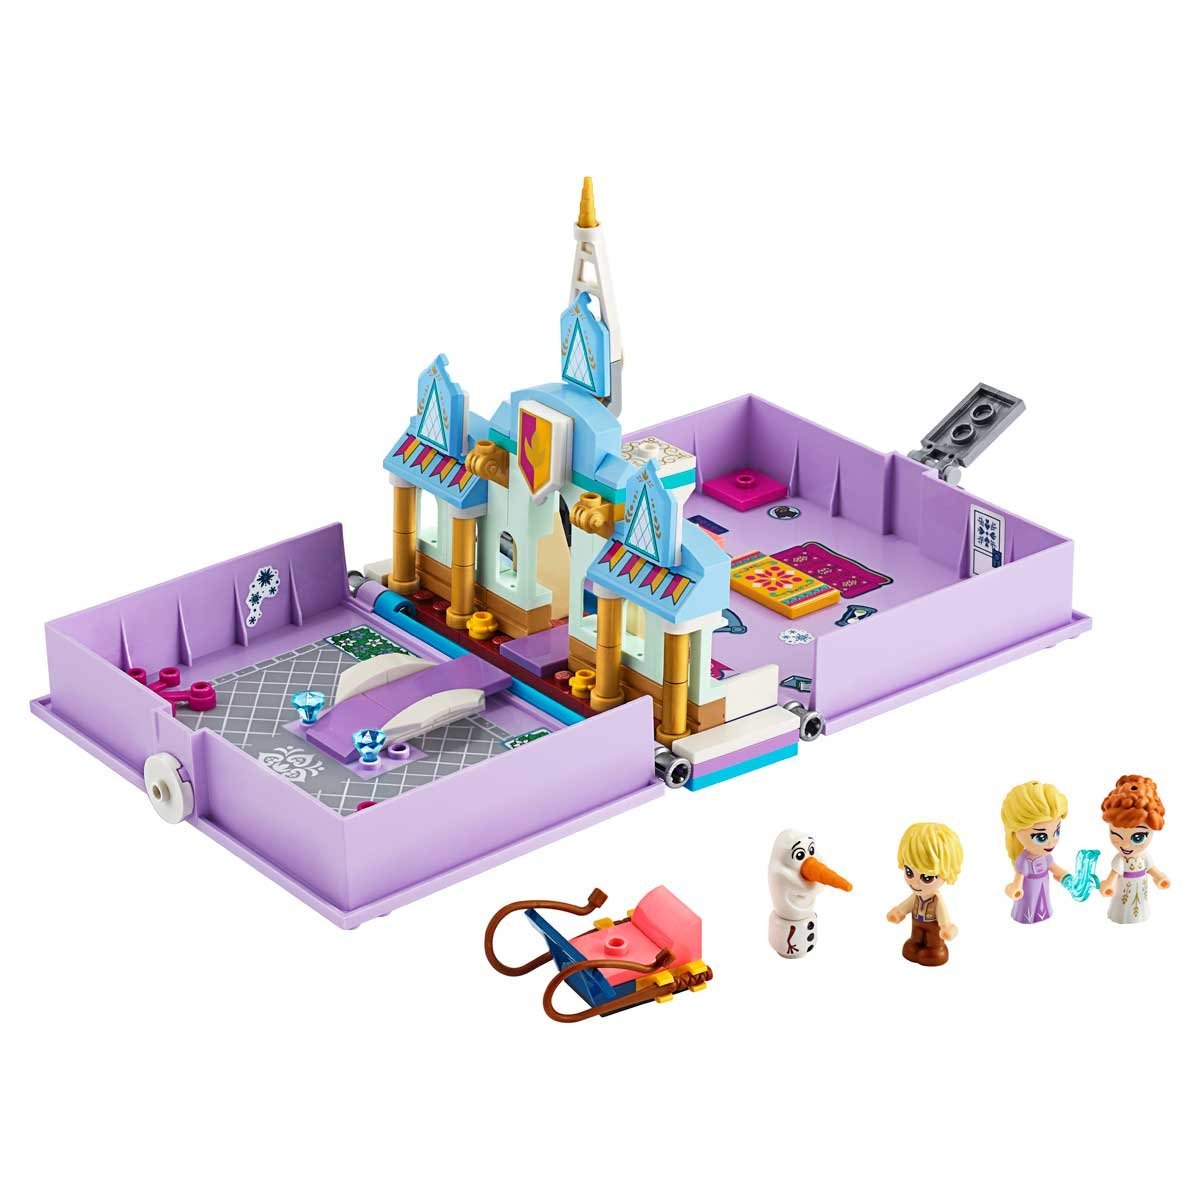 Cuentos e Historias: Anna Y Elsa Lego Disney Princess